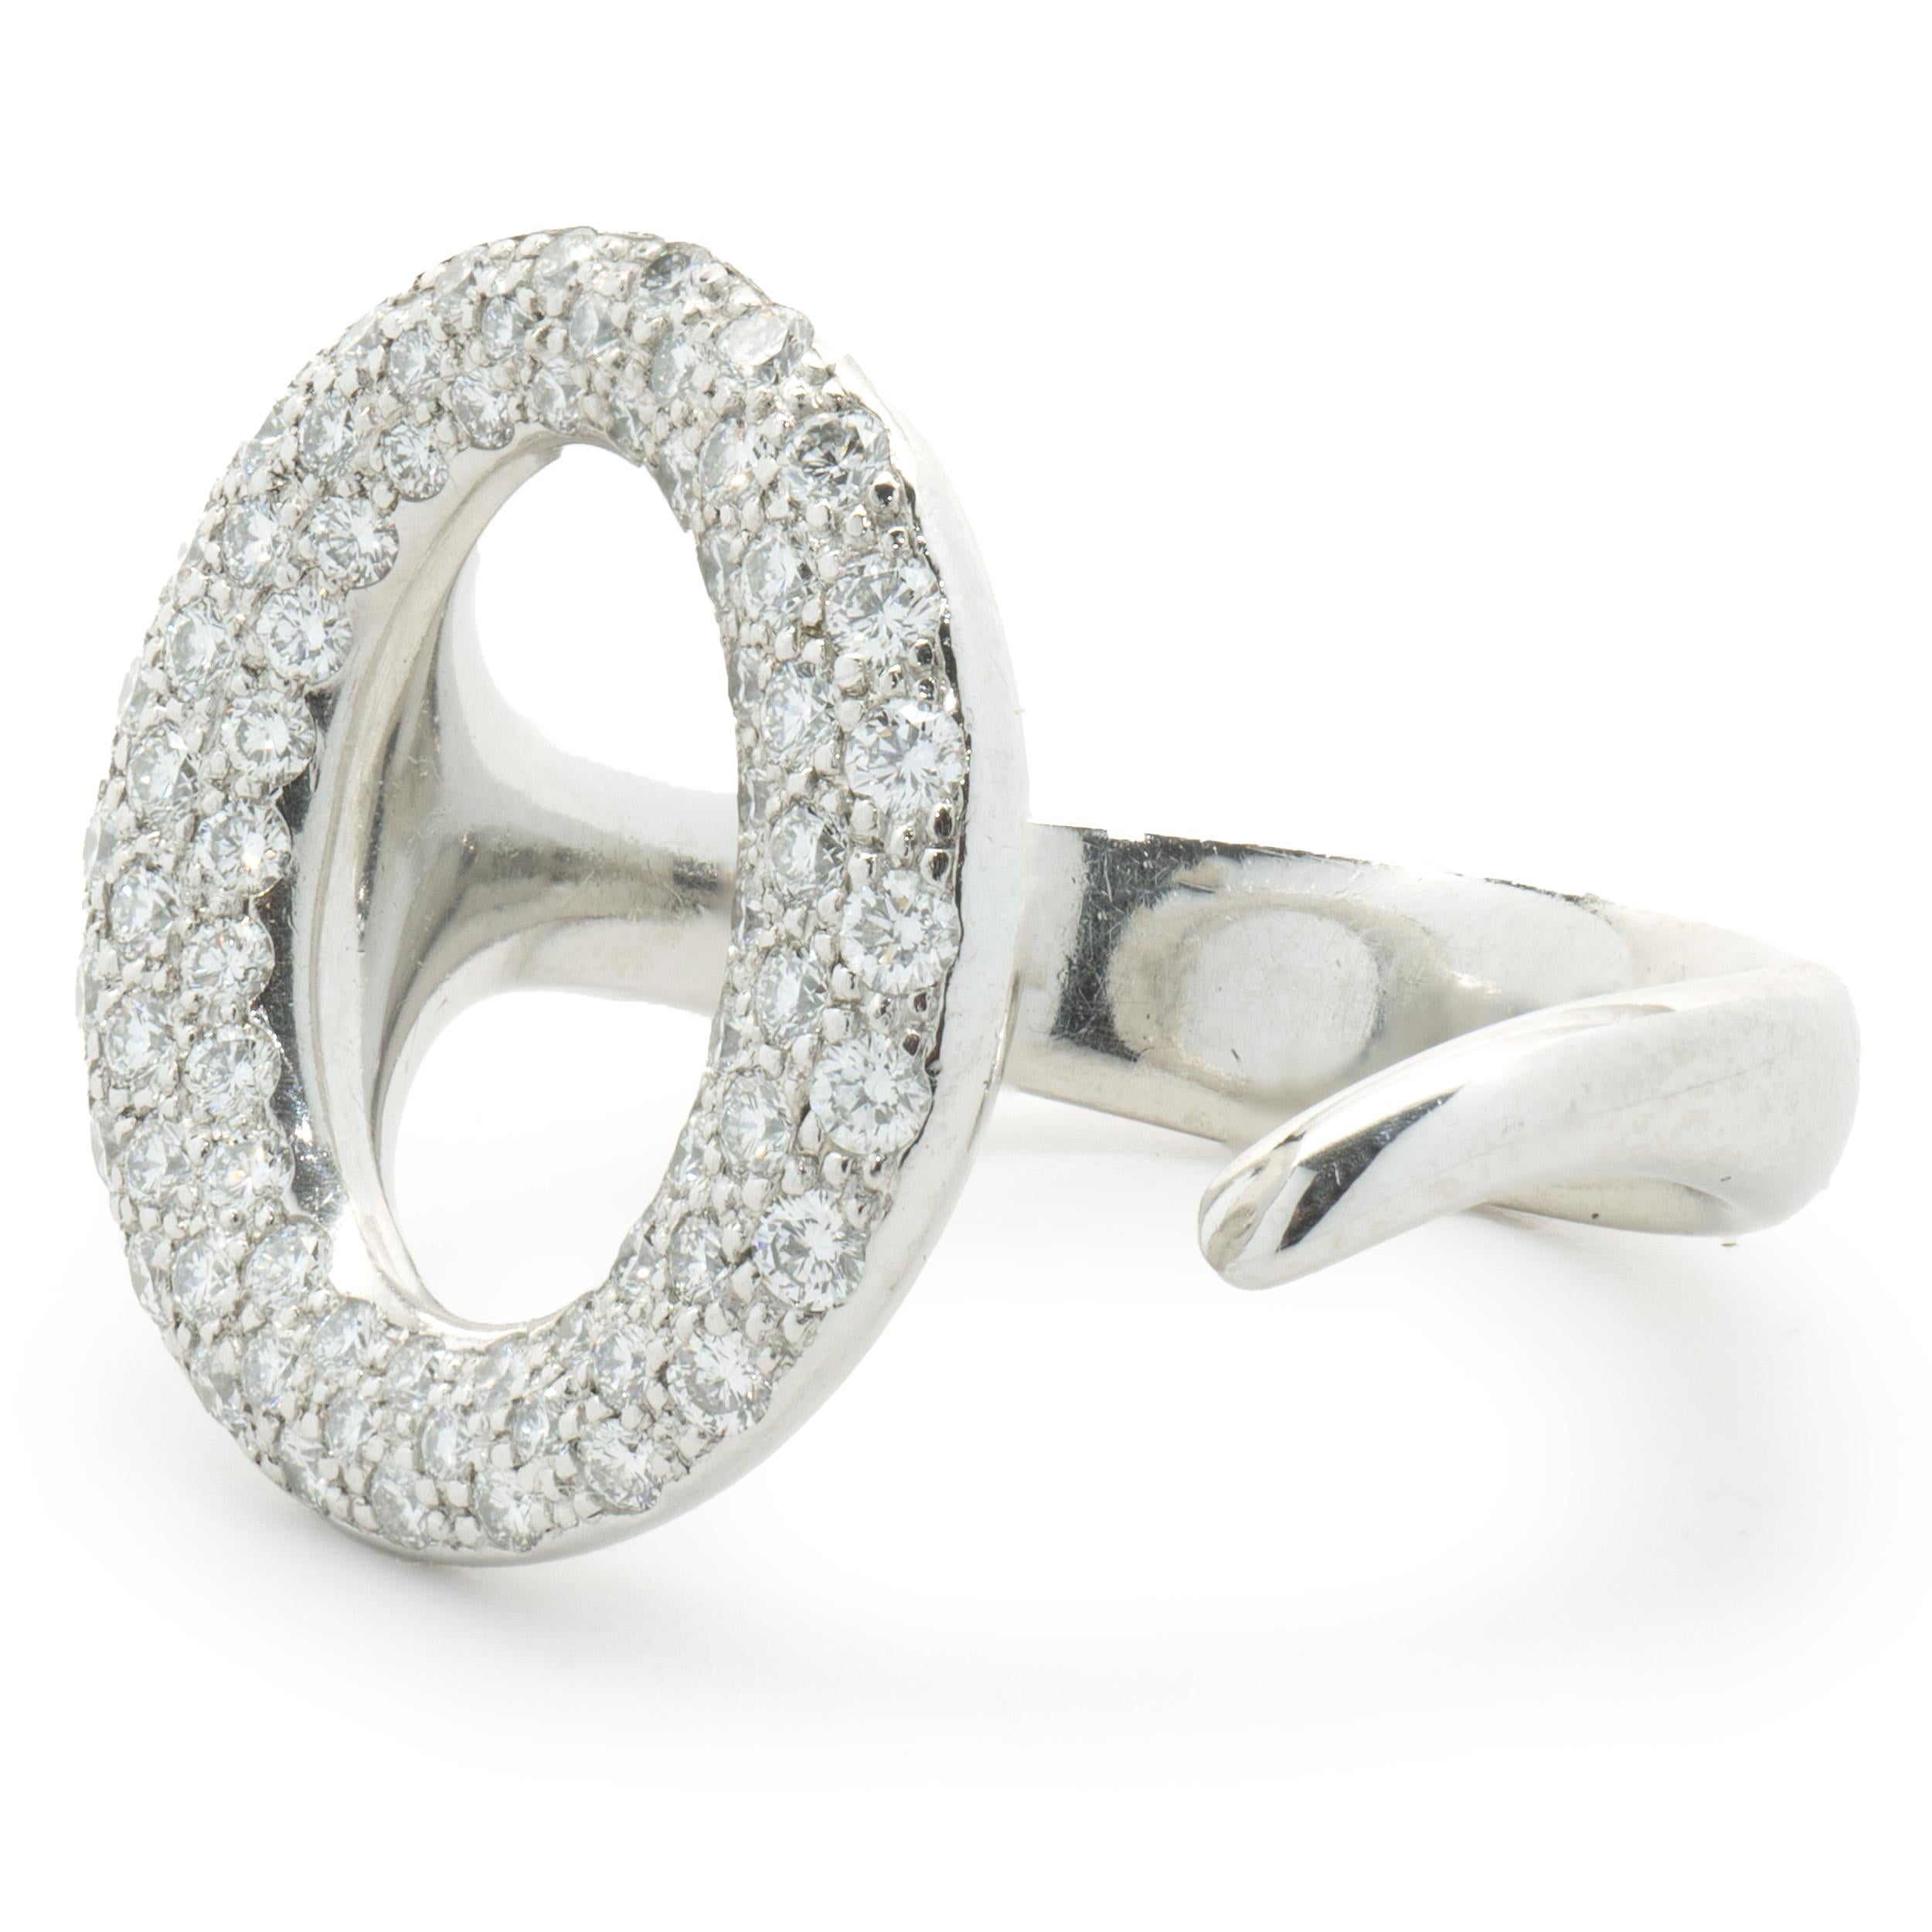 Designer: Tiffany & Co. / Elsa Peretti
MATERIAL: Platin
Diamant: 72 runde Diamanten im Brillantschliff = 0,80cttw
Farbe: G
Klarheit: VS1-2
Abmessungen: Die Ringspitze ist 18.7 mm breit.
Größe: 7,5
Gewicht: 13,40 Gramm
